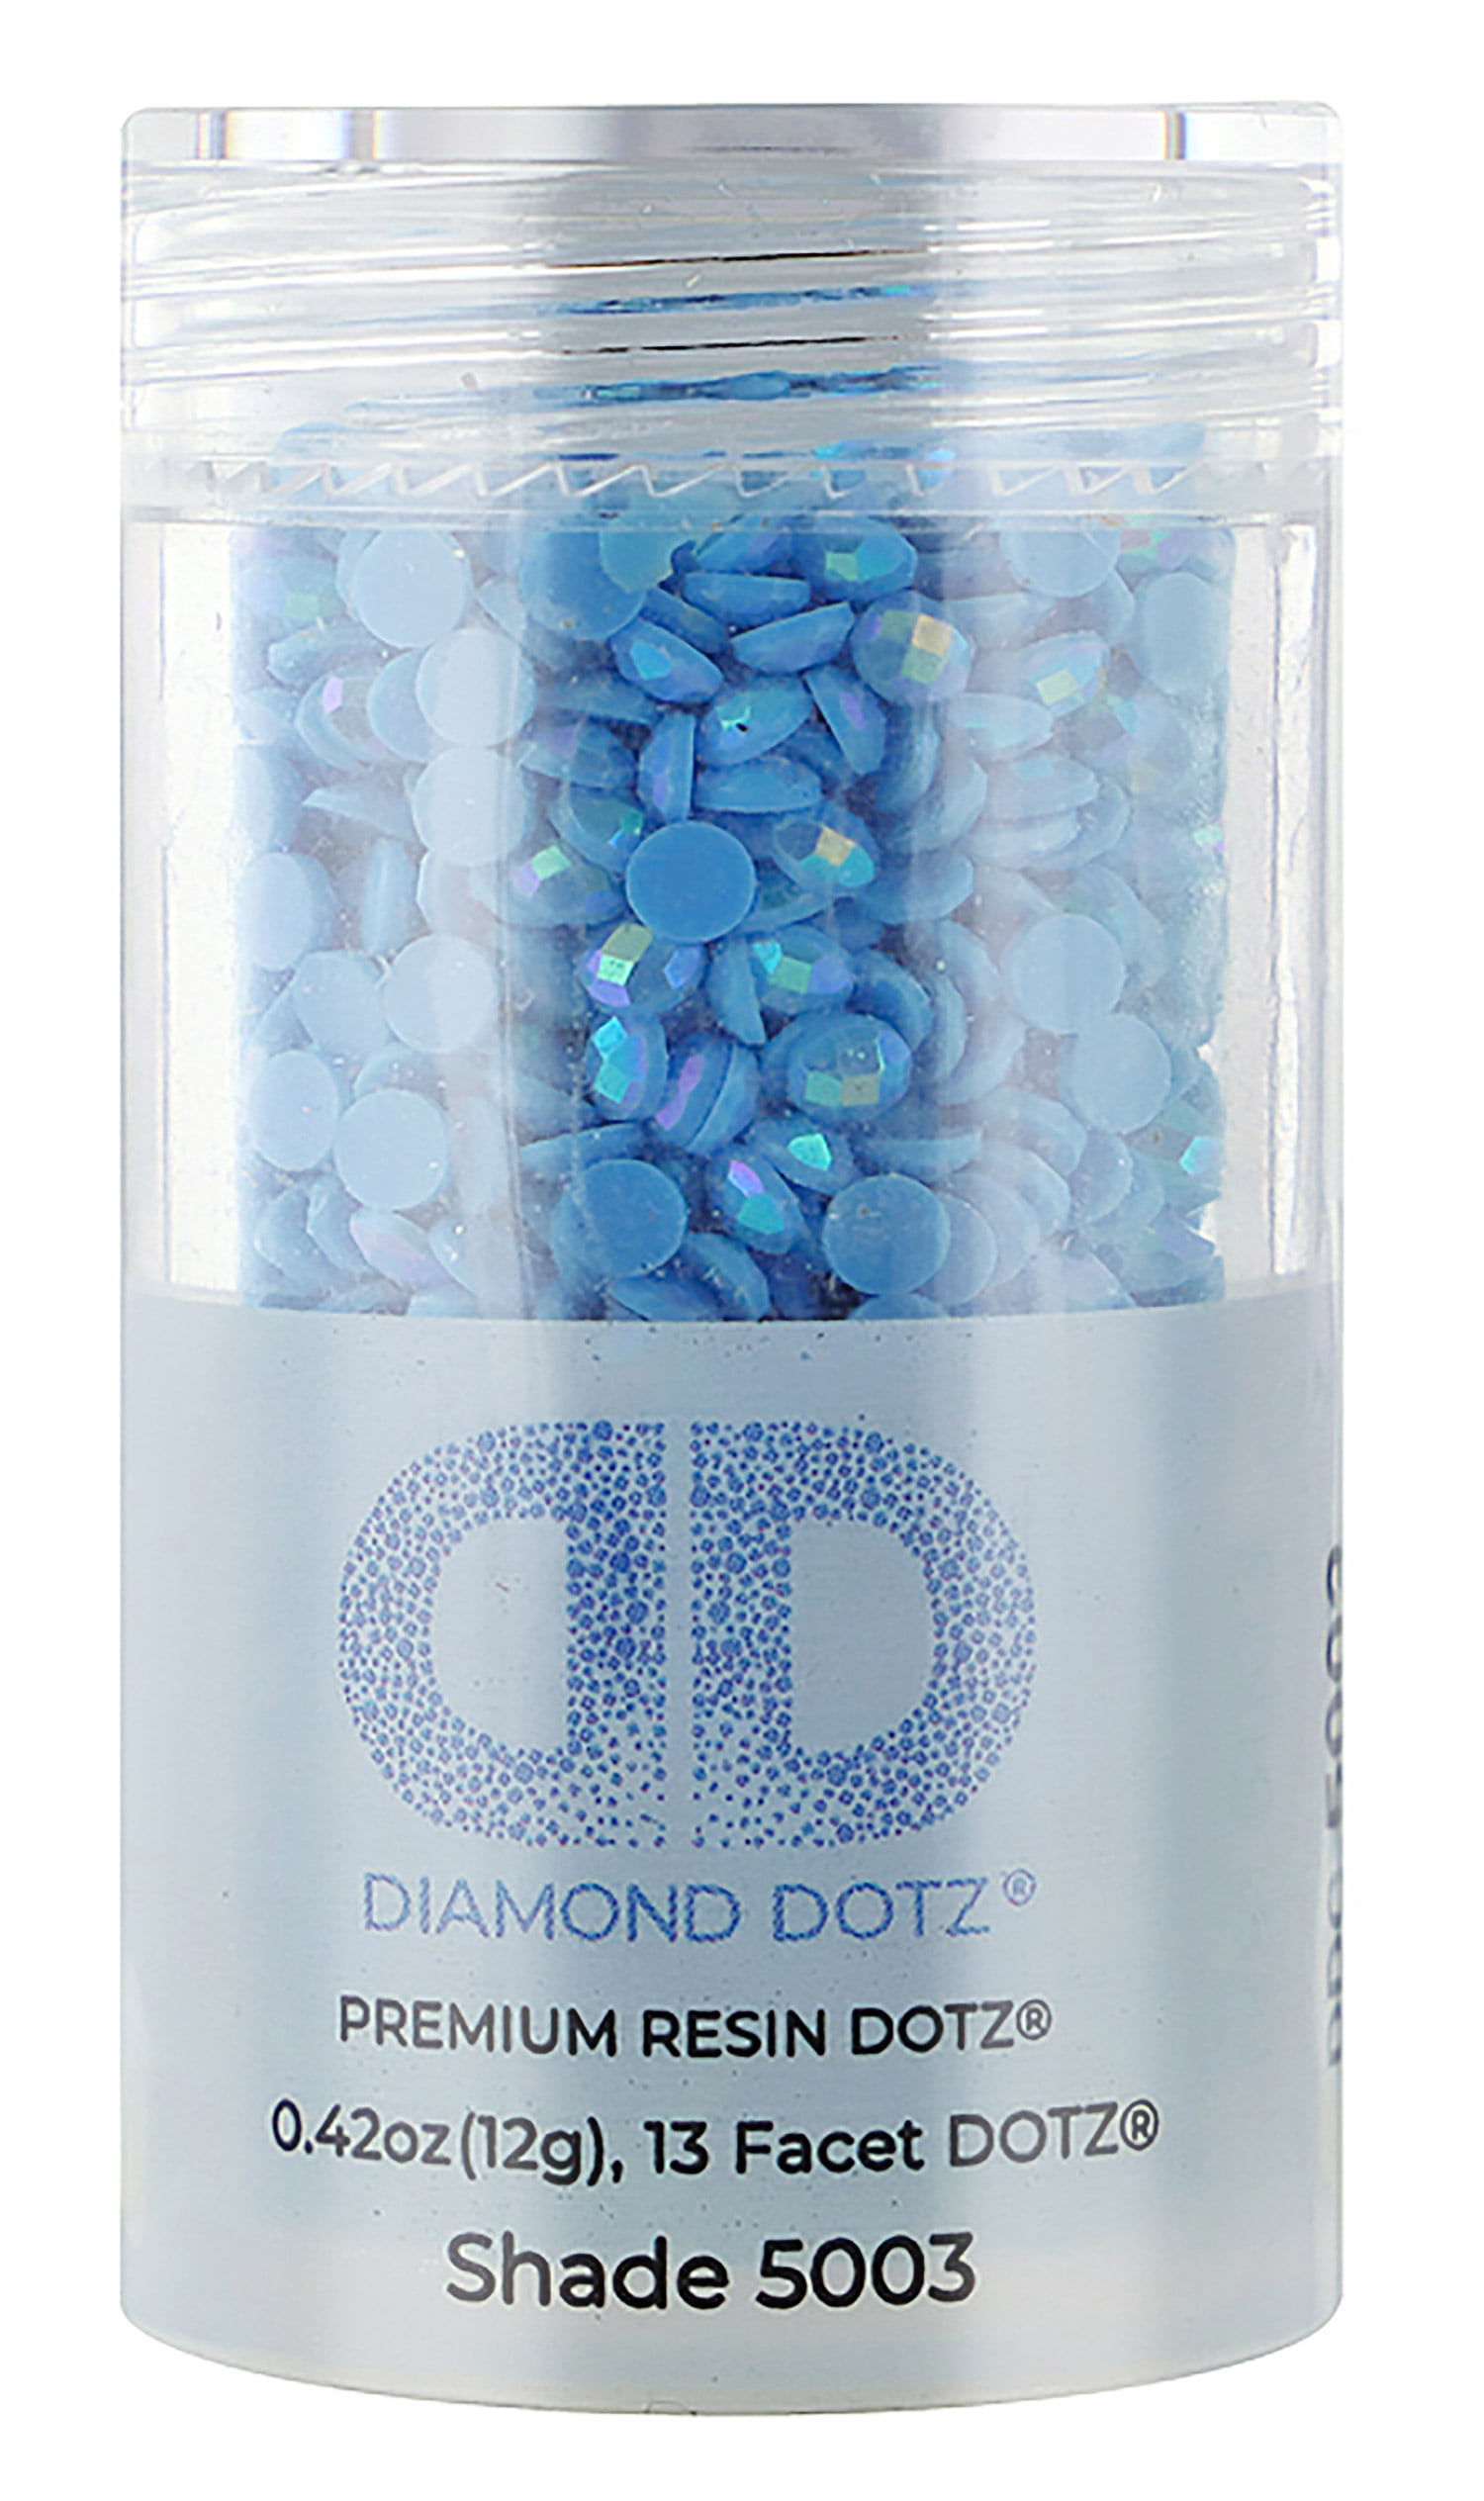 12 Diamond Dotz Premium Resin Dotz Freestyle Various Shades